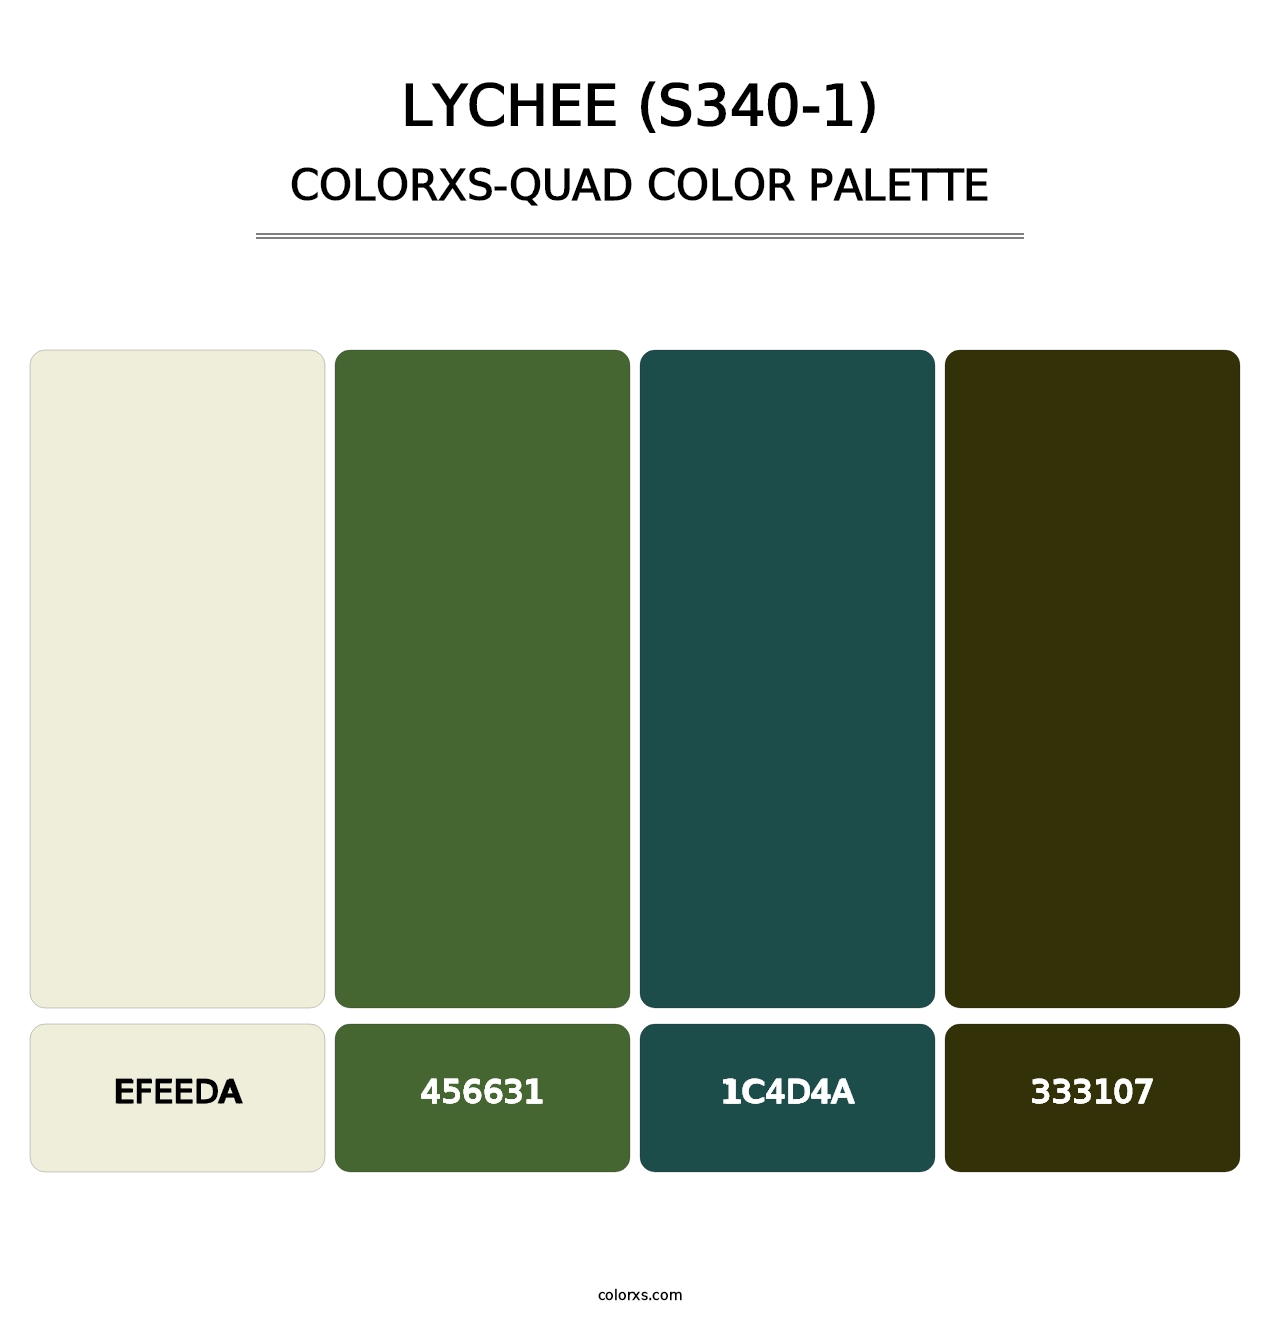 Lychee (S340-1) - Colorxs Quad Palette